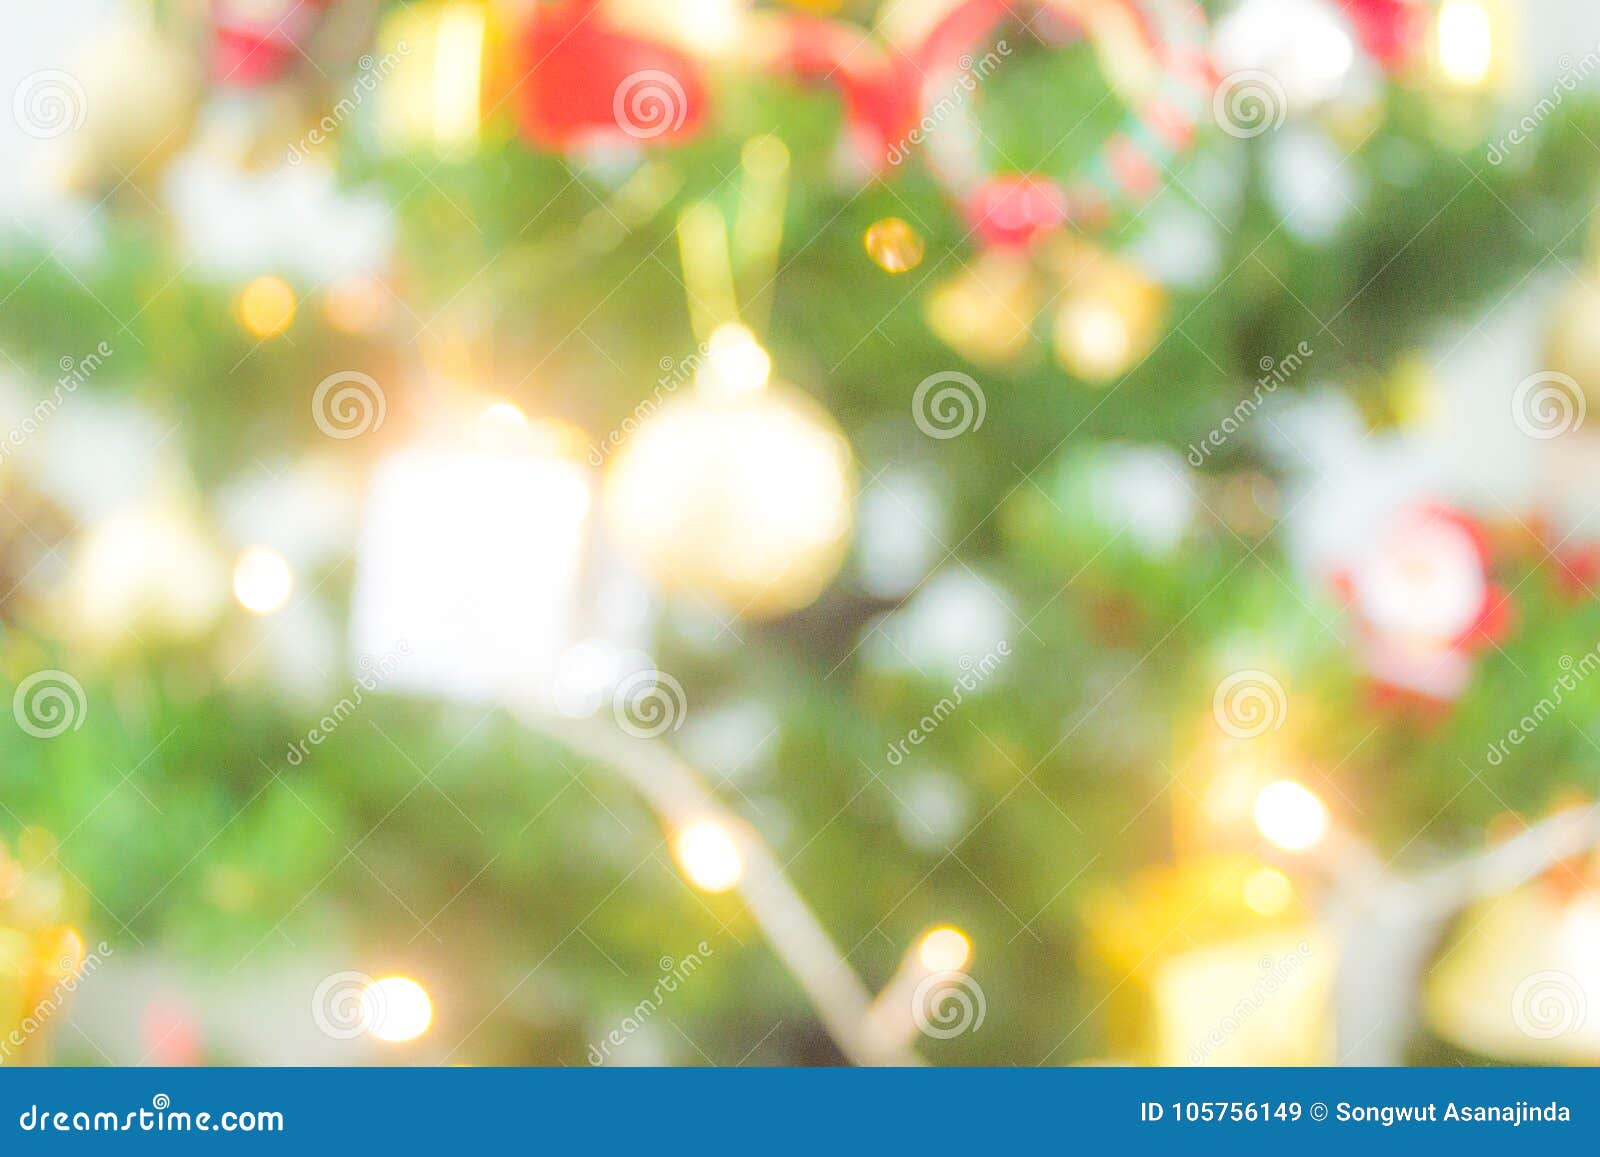 Khám phá cây thông đèn sáng huyền ảo với màn sáng lấp lánh đầy màu sắc. Bức tranh sẽ khiến bạn say đắm bởi vẻ đẹp nghệ thuật đầy lôi cuốn. Sự kết hợp giữa cây thông và ánh đèn làm cho không gian thêm phần ấn tượng trong mùa Giáng sinh hay những dịp lễ hội. 